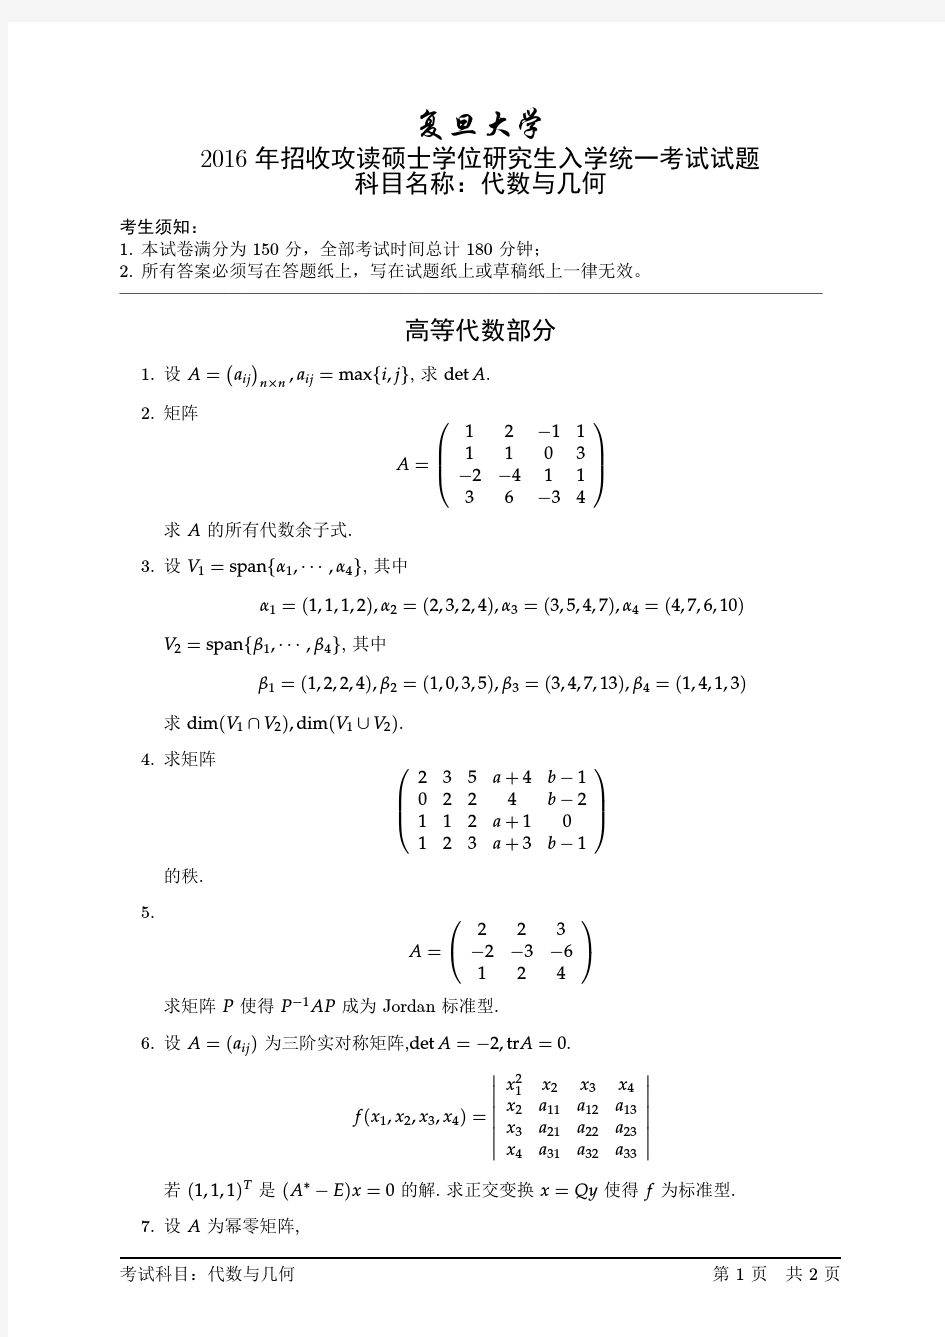 2016年复旦大学代数与几何考研试题(Xiongge)